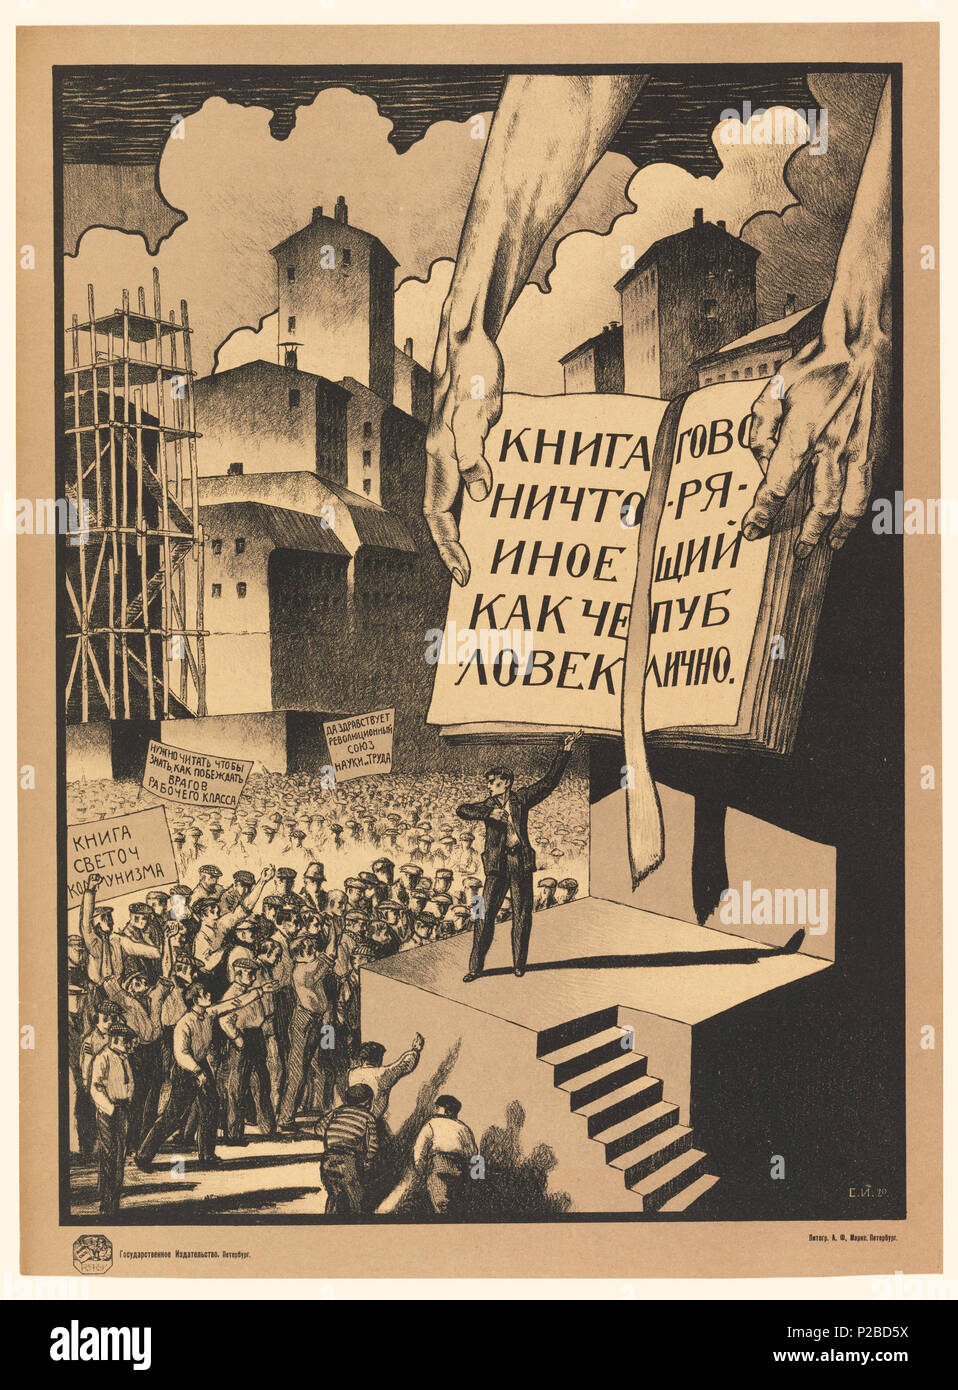 Inglés: póster, un libro no es sino una persona hablando públicamente, 1920  . Inglés: cartel mostrando una vista de la ciudad con edificios y andamios  en el fondo bajo grandes nubes.